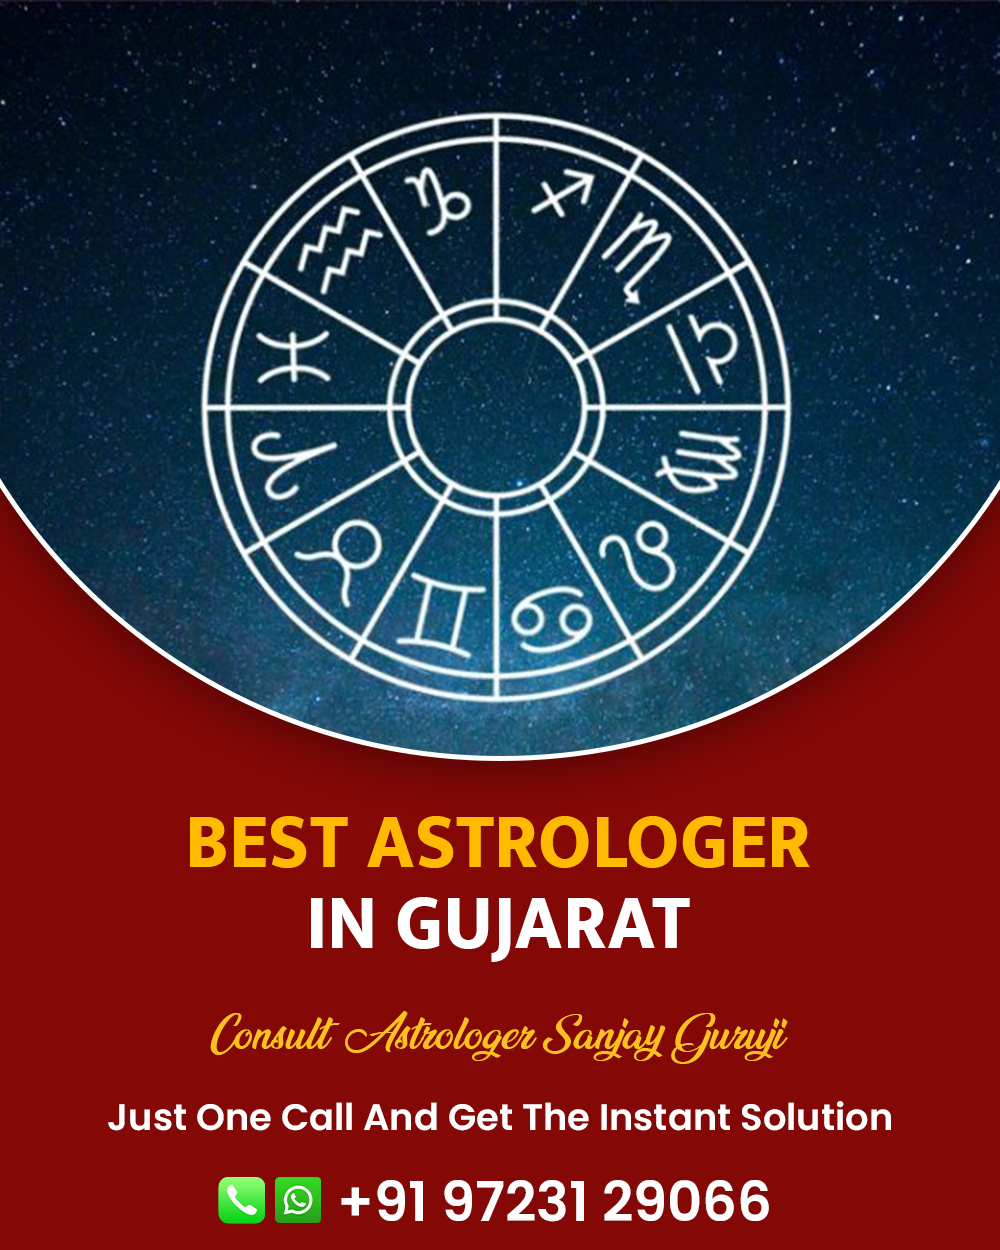 Best Astrologer in Gujarat